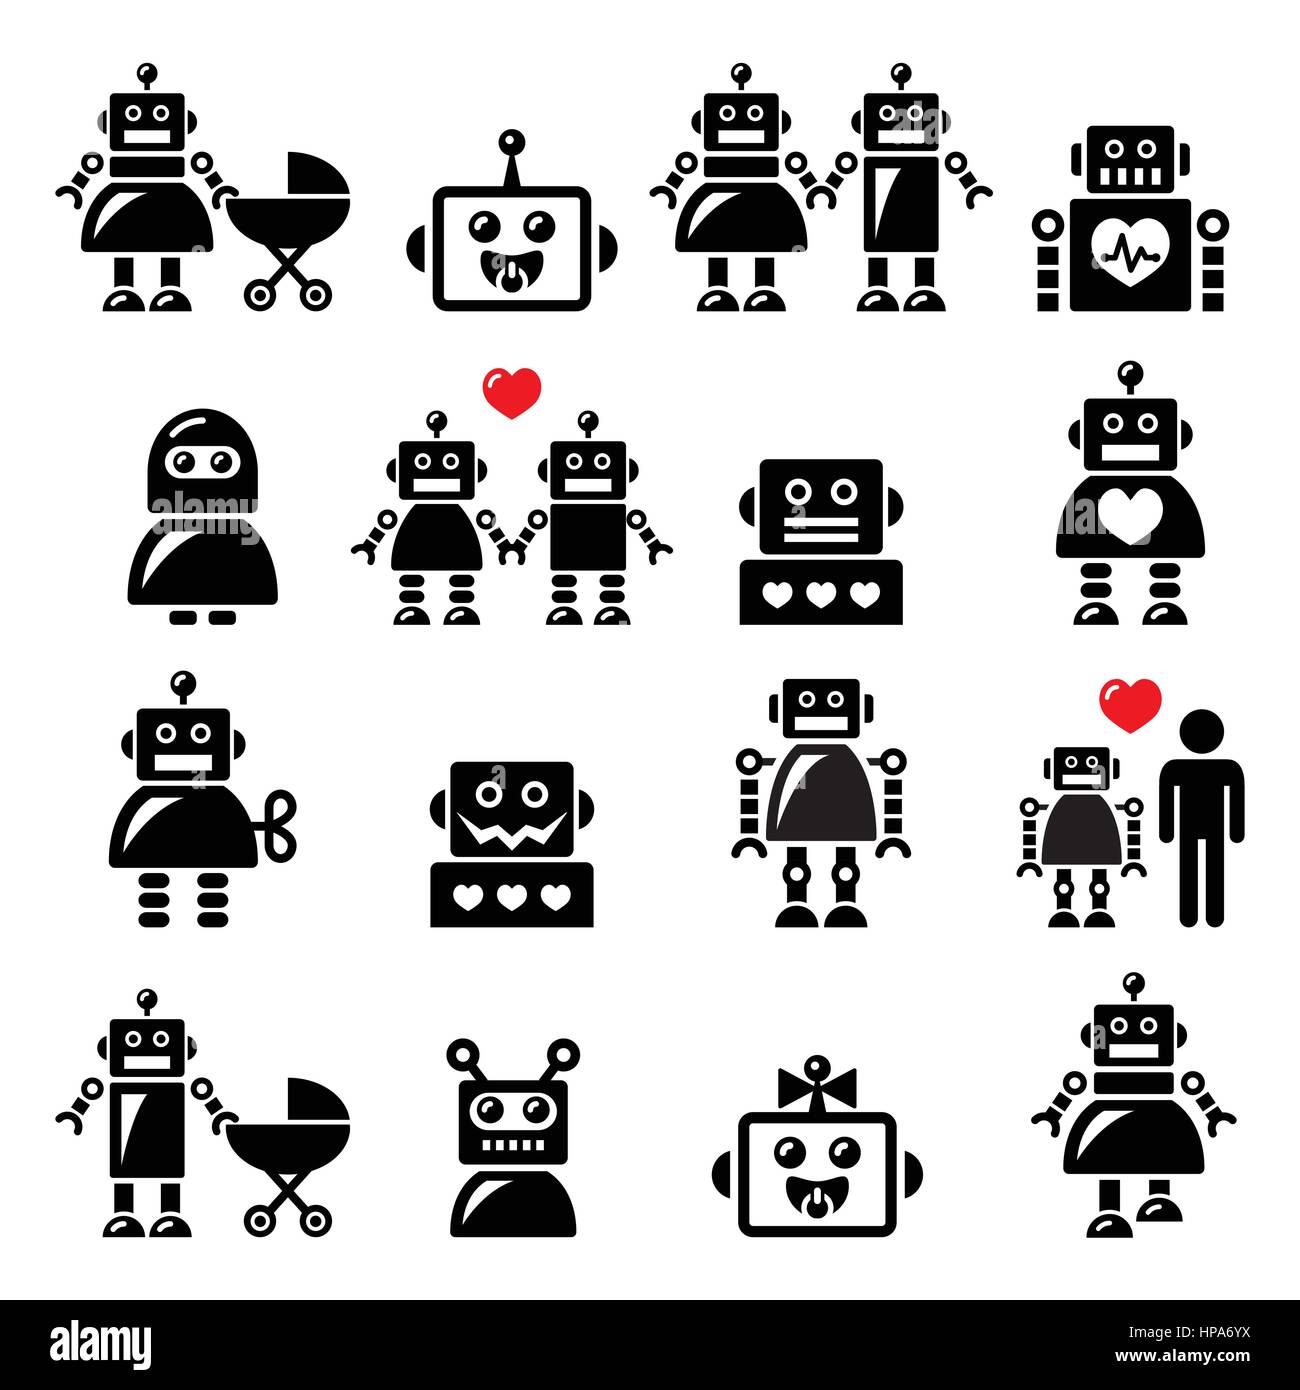 Famille, femme, robot robot bébé icons set Illustration de Vecteur